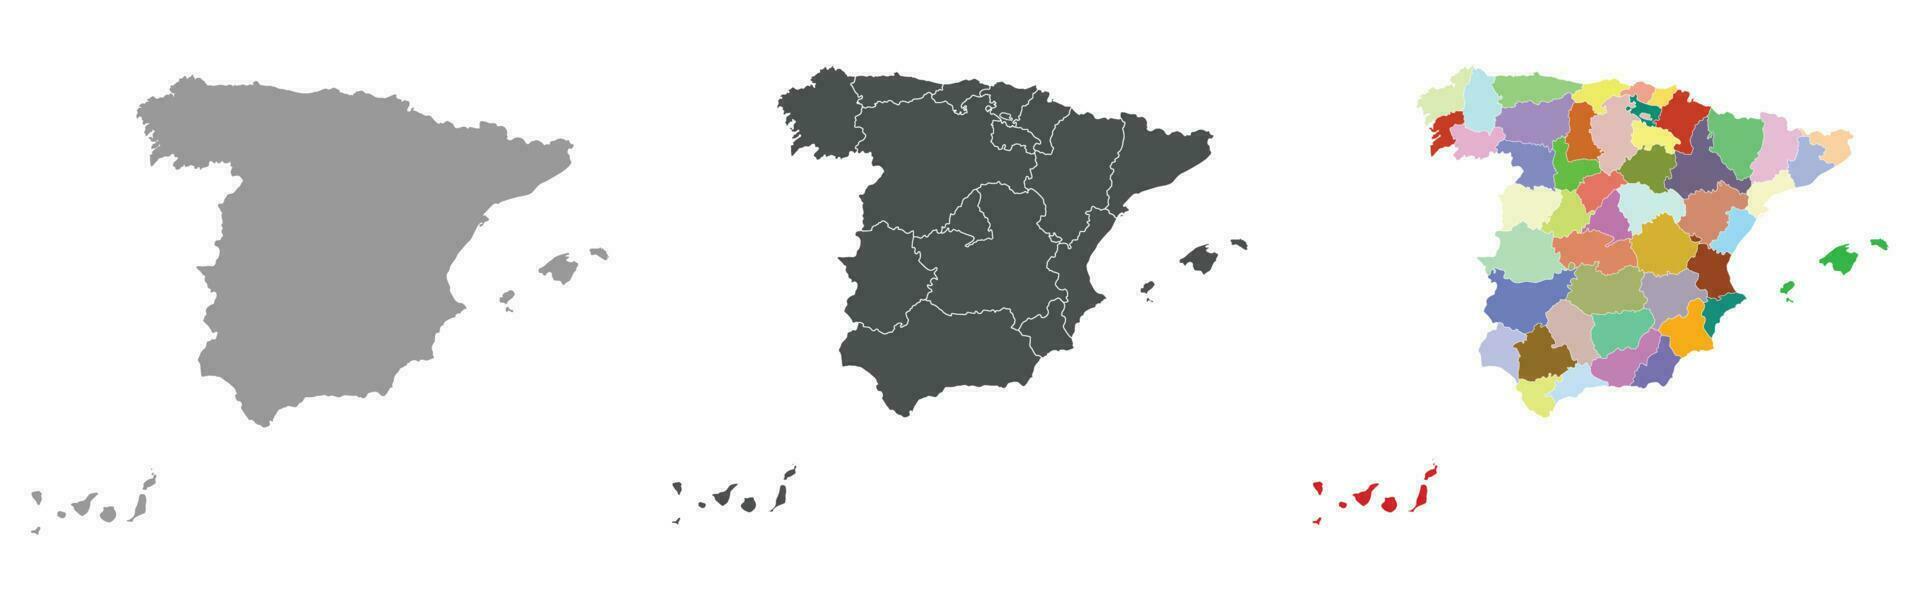 España mapa conjunto en de colores y gris vector